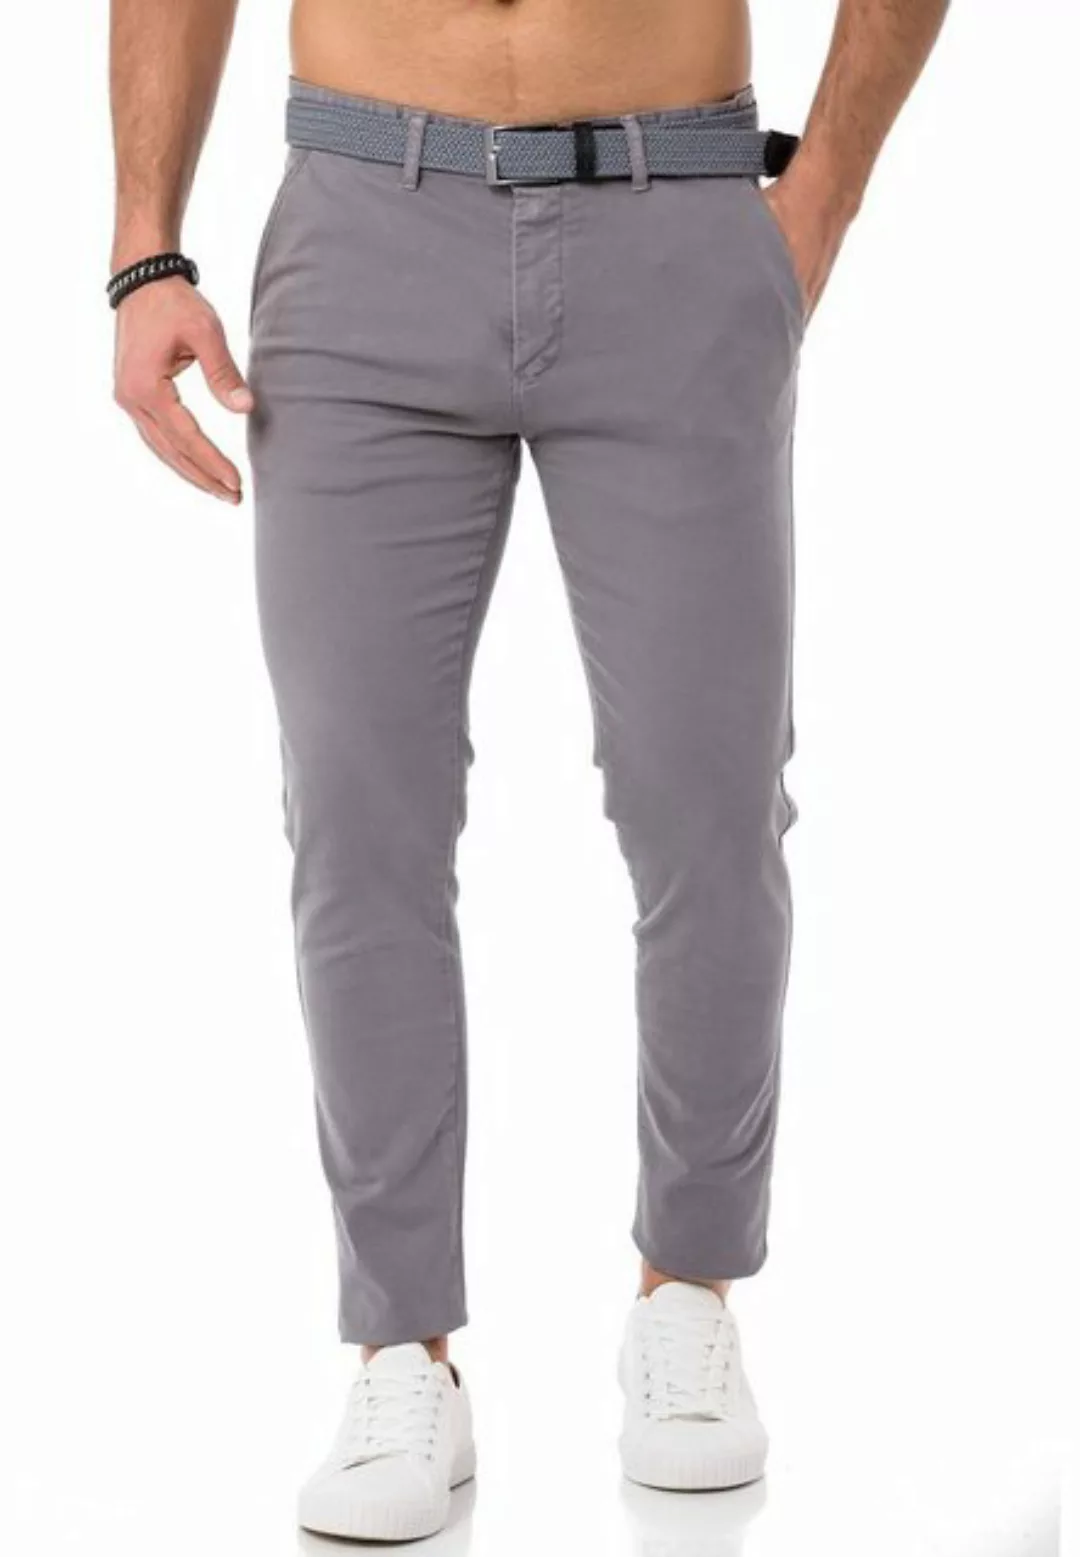 RedBridge Chinohose Chino Hose Pants mit Gürtel Navy Blau W30 L34 günstig online kaufen